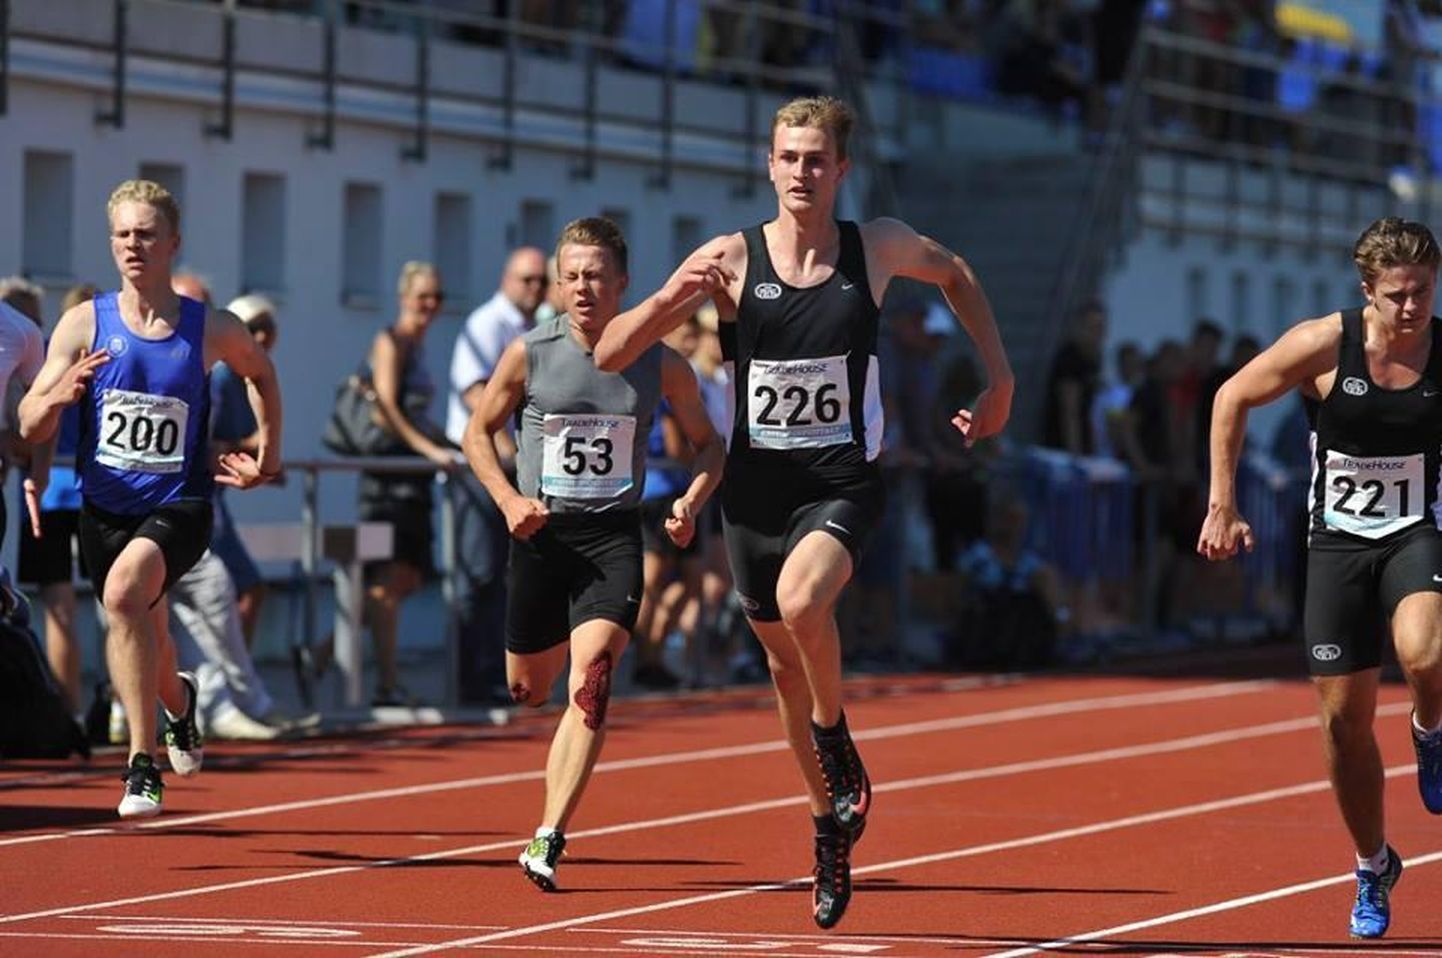 Rakverlased Robin Sapar (nr 226) ja Albert Annimäe (nr 221) on Eesti kaks väledamat kuni 18-aastast sprinterit.